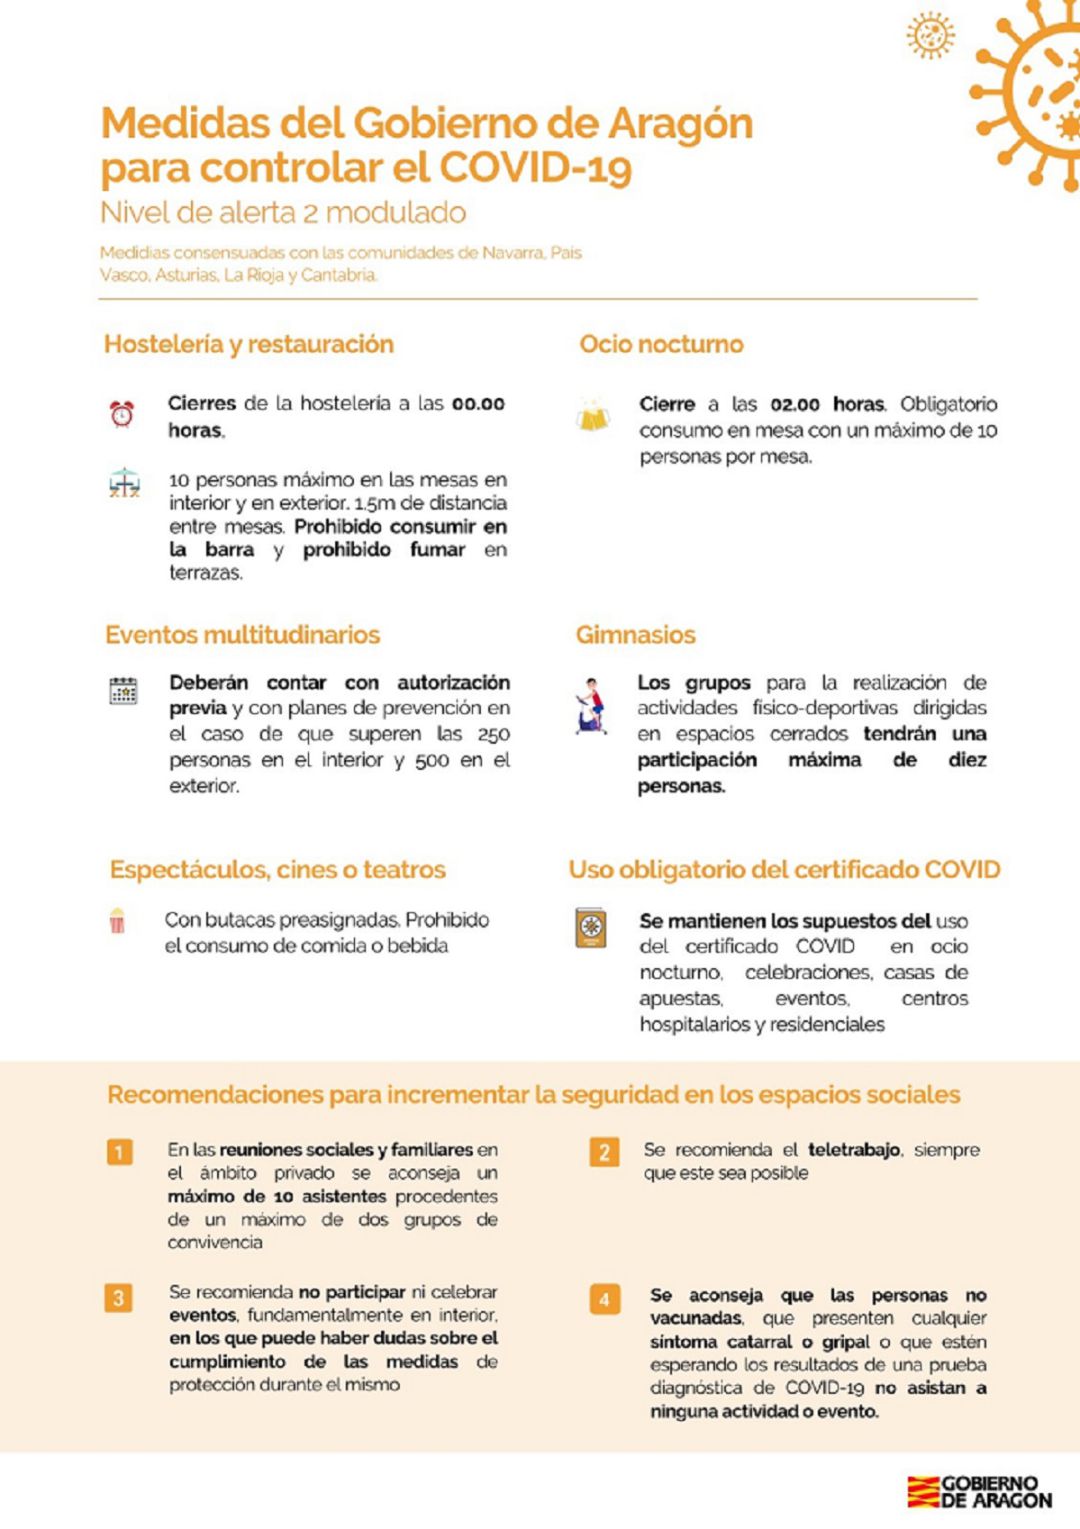 Medidas restrictivas en Aragón hasta el 15 de enero 